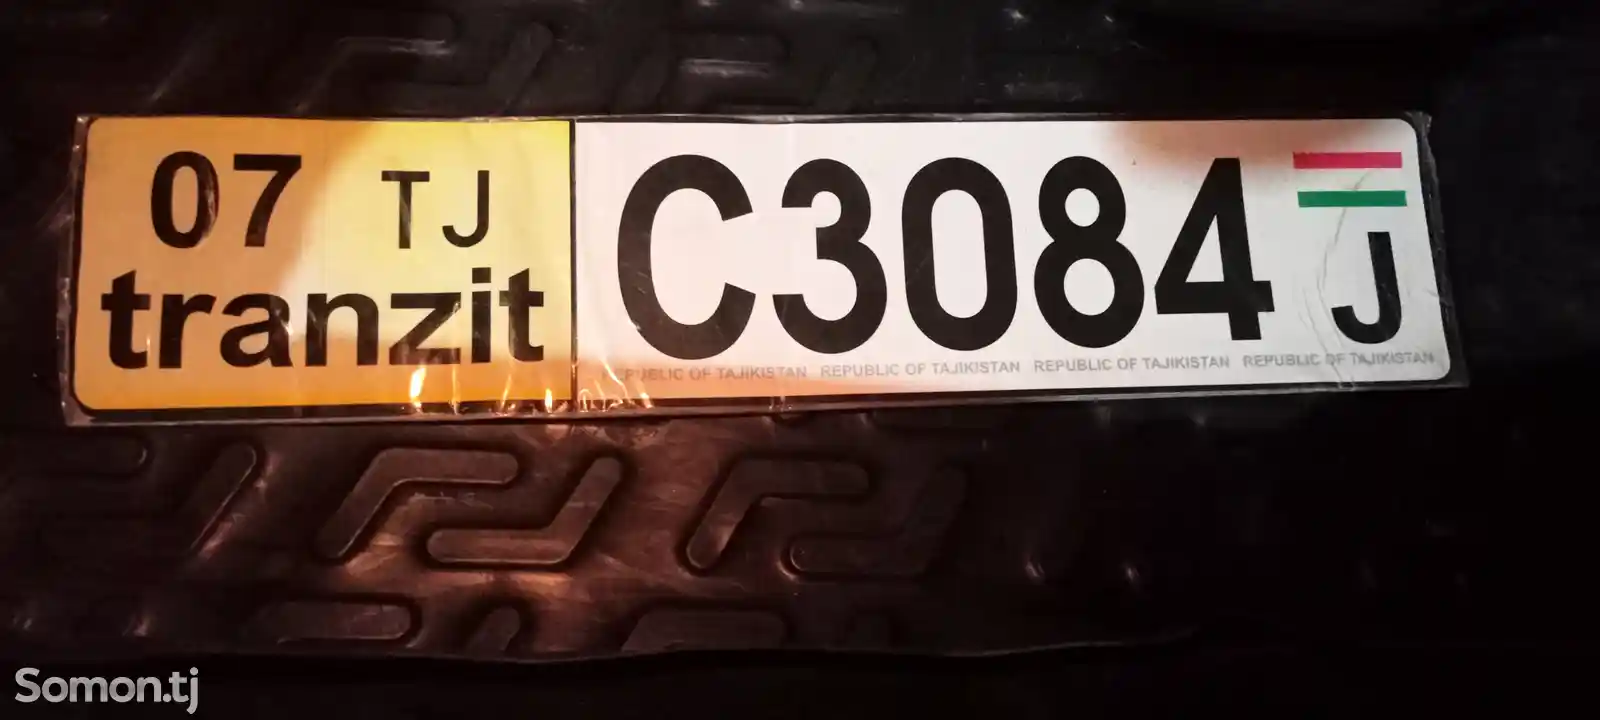 Найден номера авто C3084J